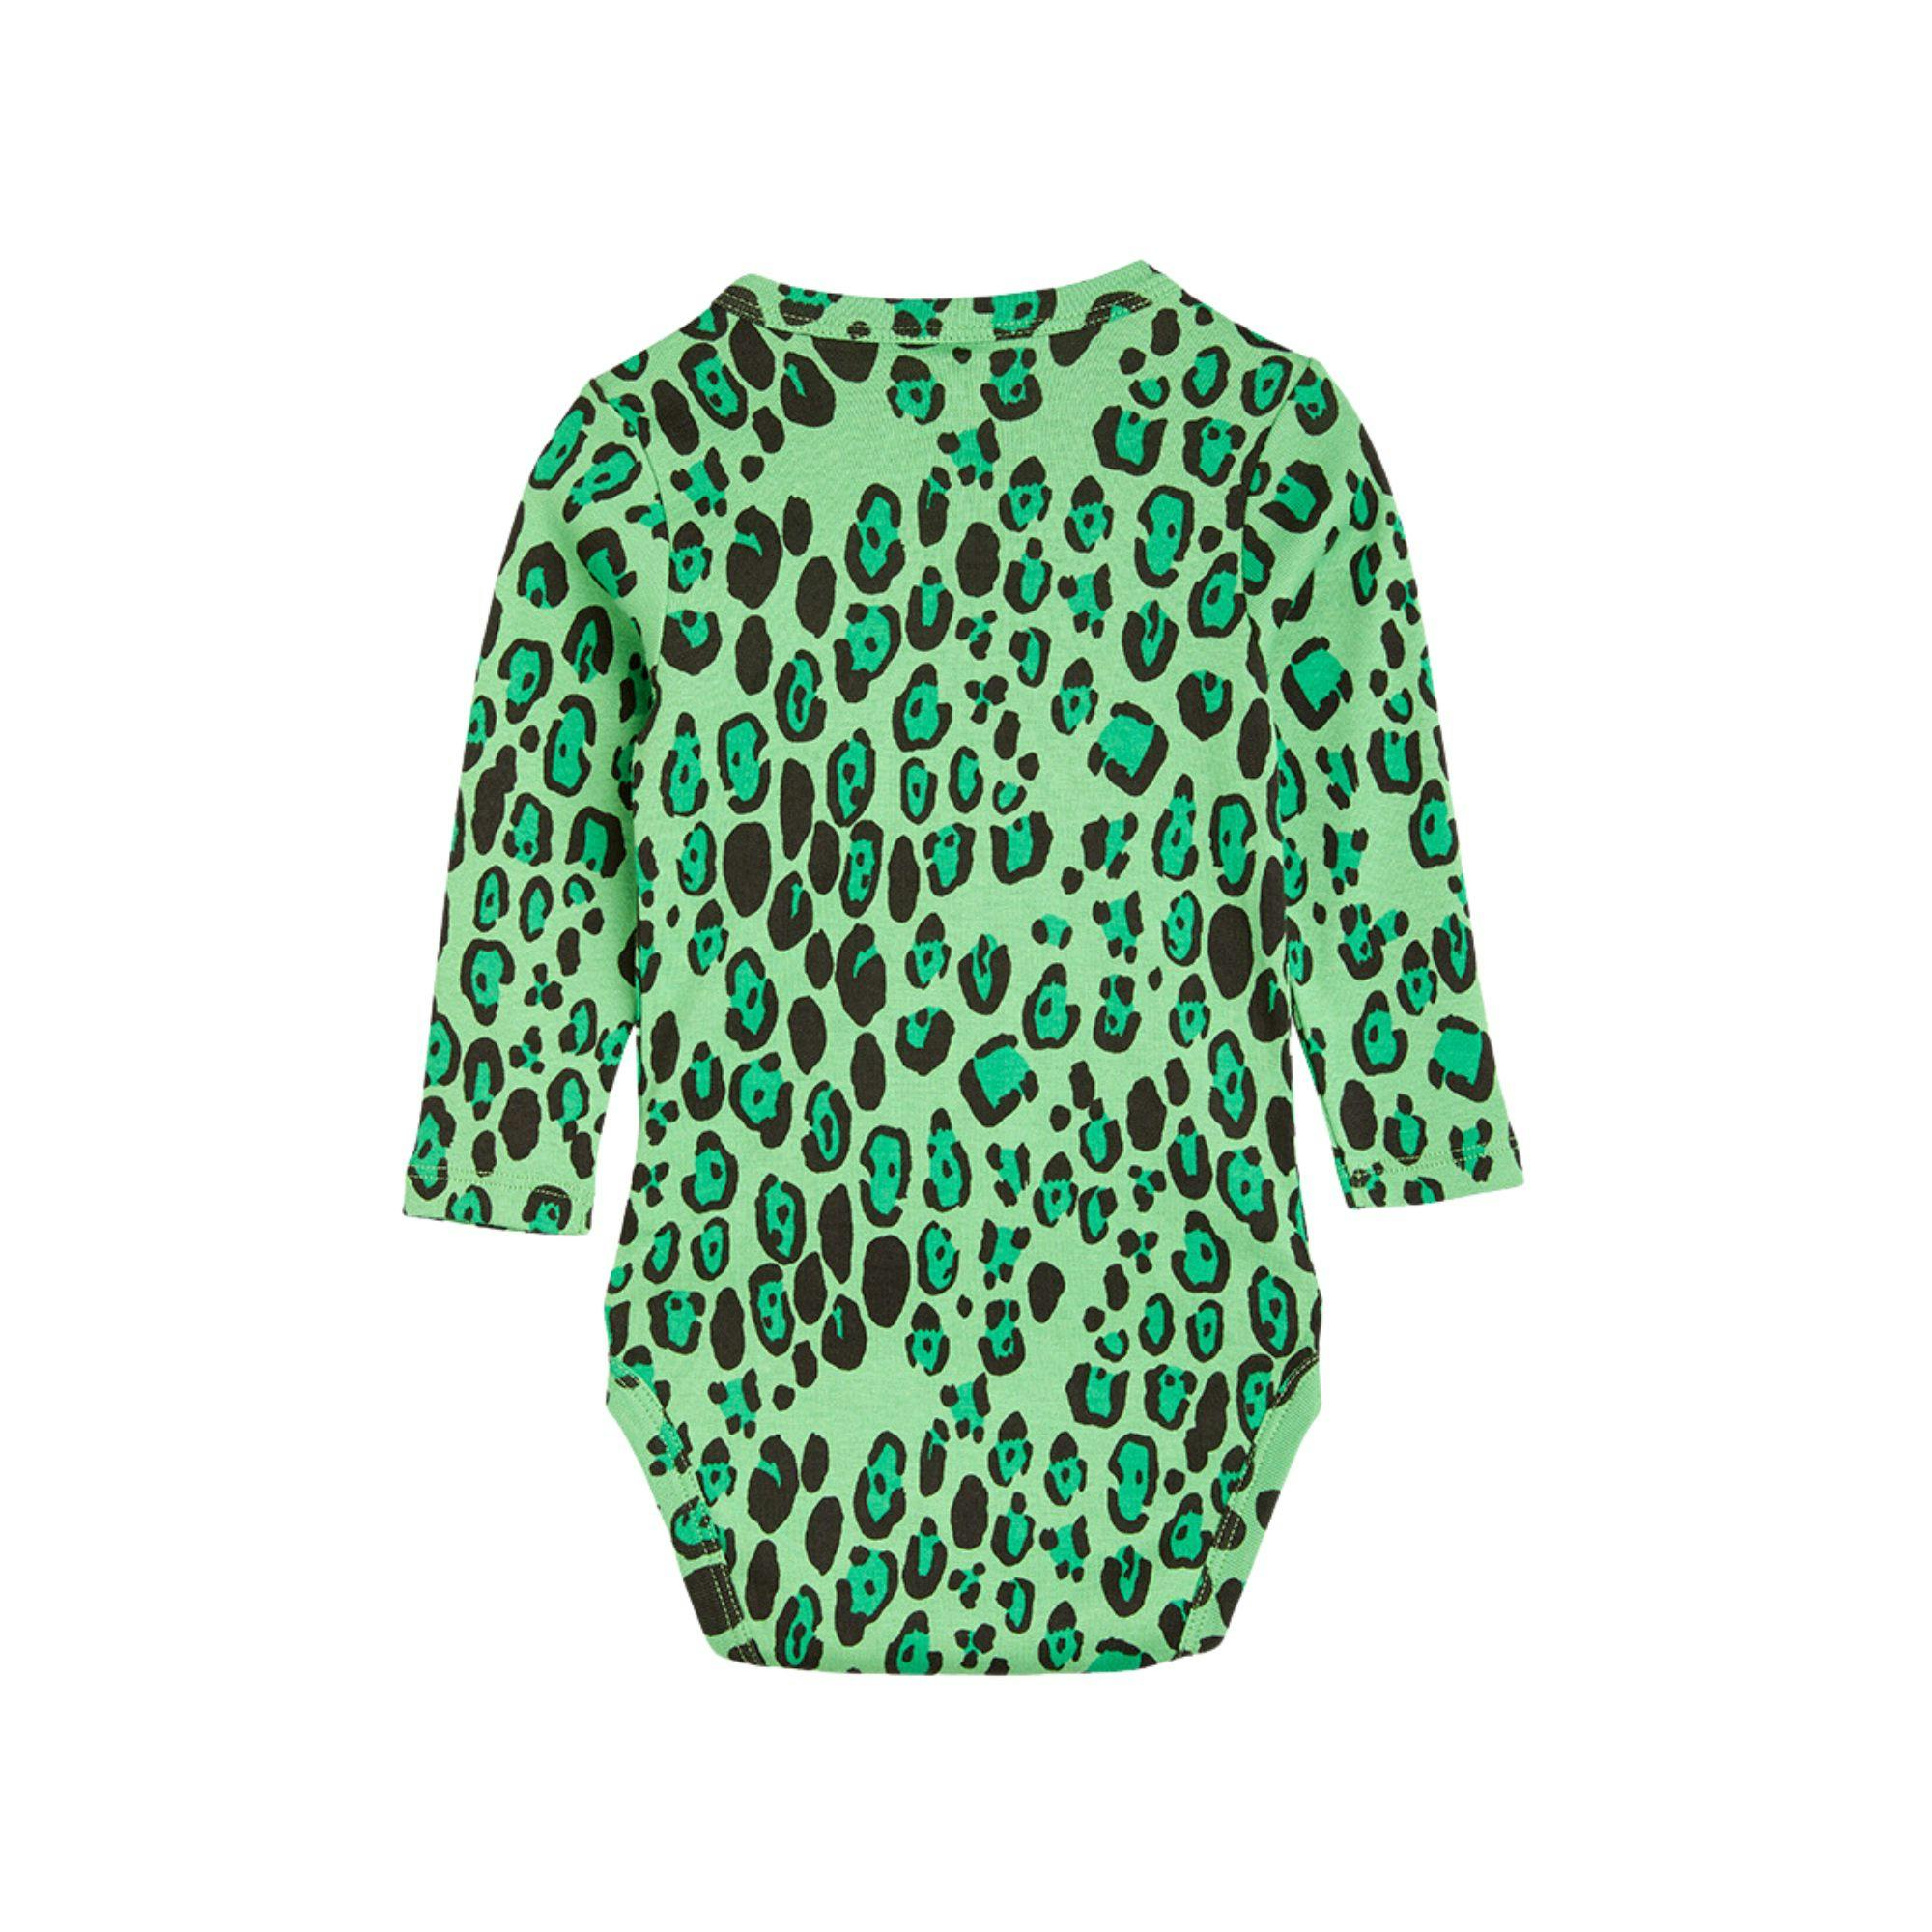 Body - Leopard green